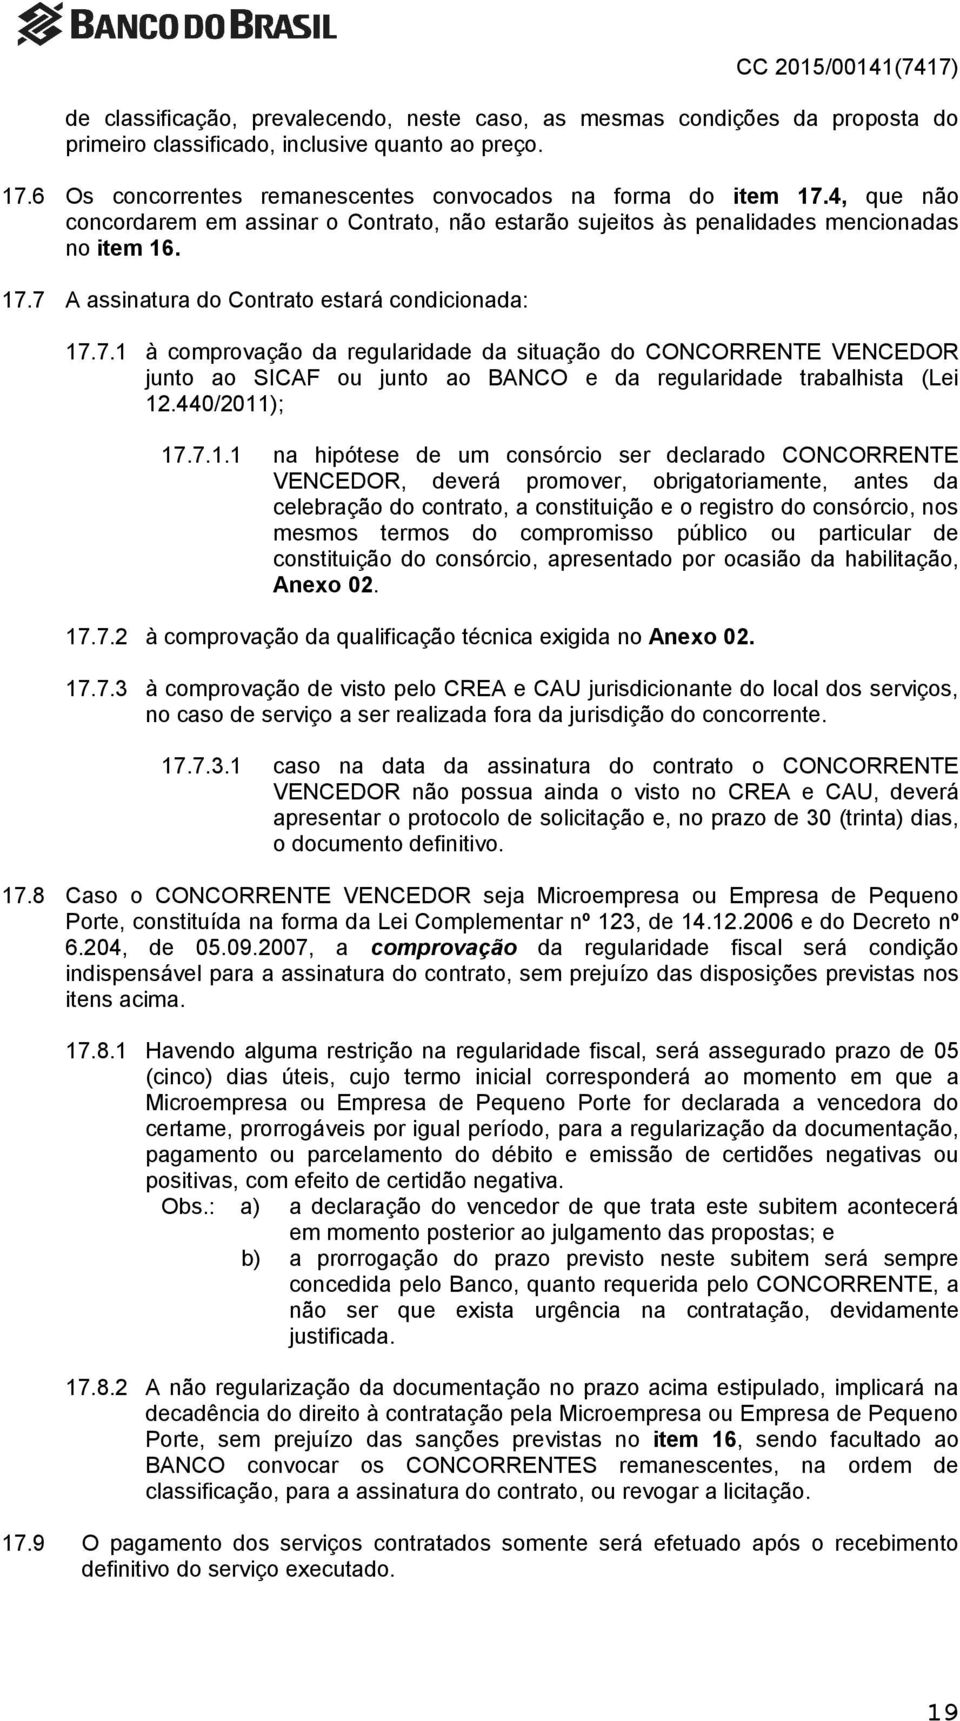 7 A assinatura do Contrato estará condicionada: 17.7.1 à comprovação da regularidade da situação do CONCORRENTE VENCEDOR junto ao SICAF ou junto ao BANCO e da regularidade trabalhista (Lei 12.